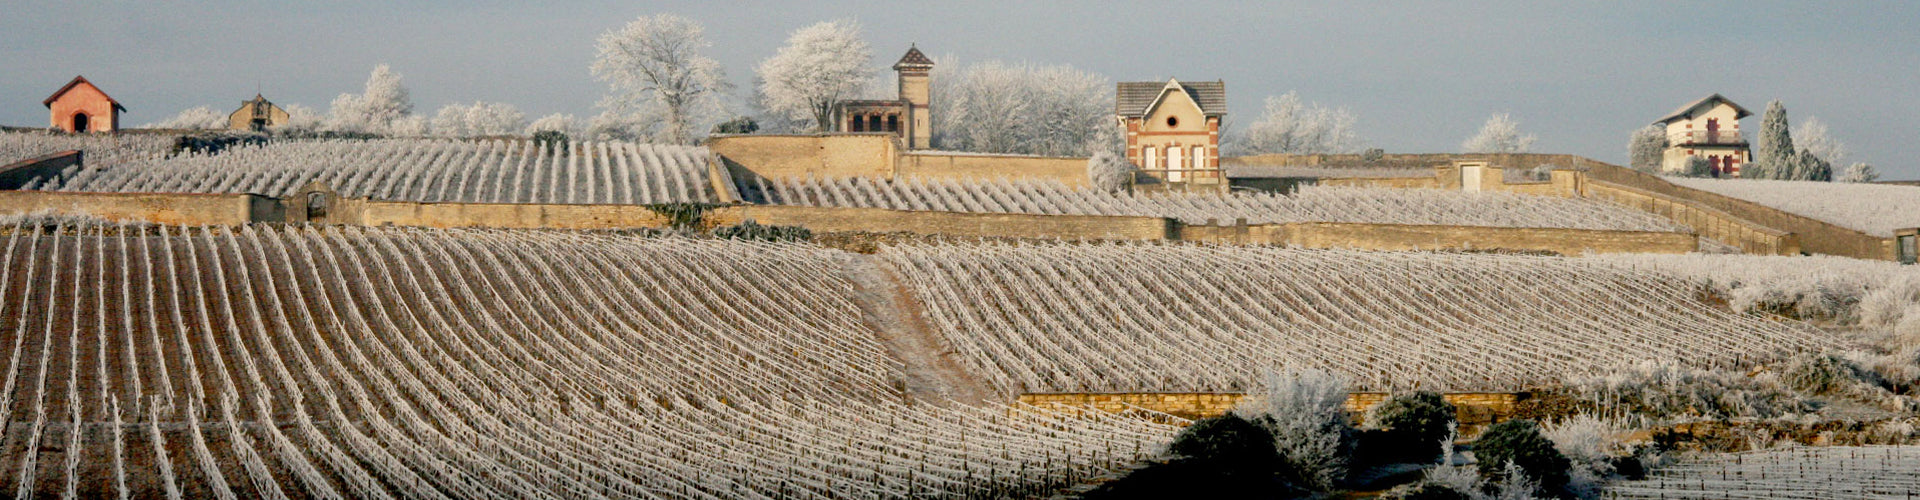 Domaine Pierre Morey Meursault vineyards in winter